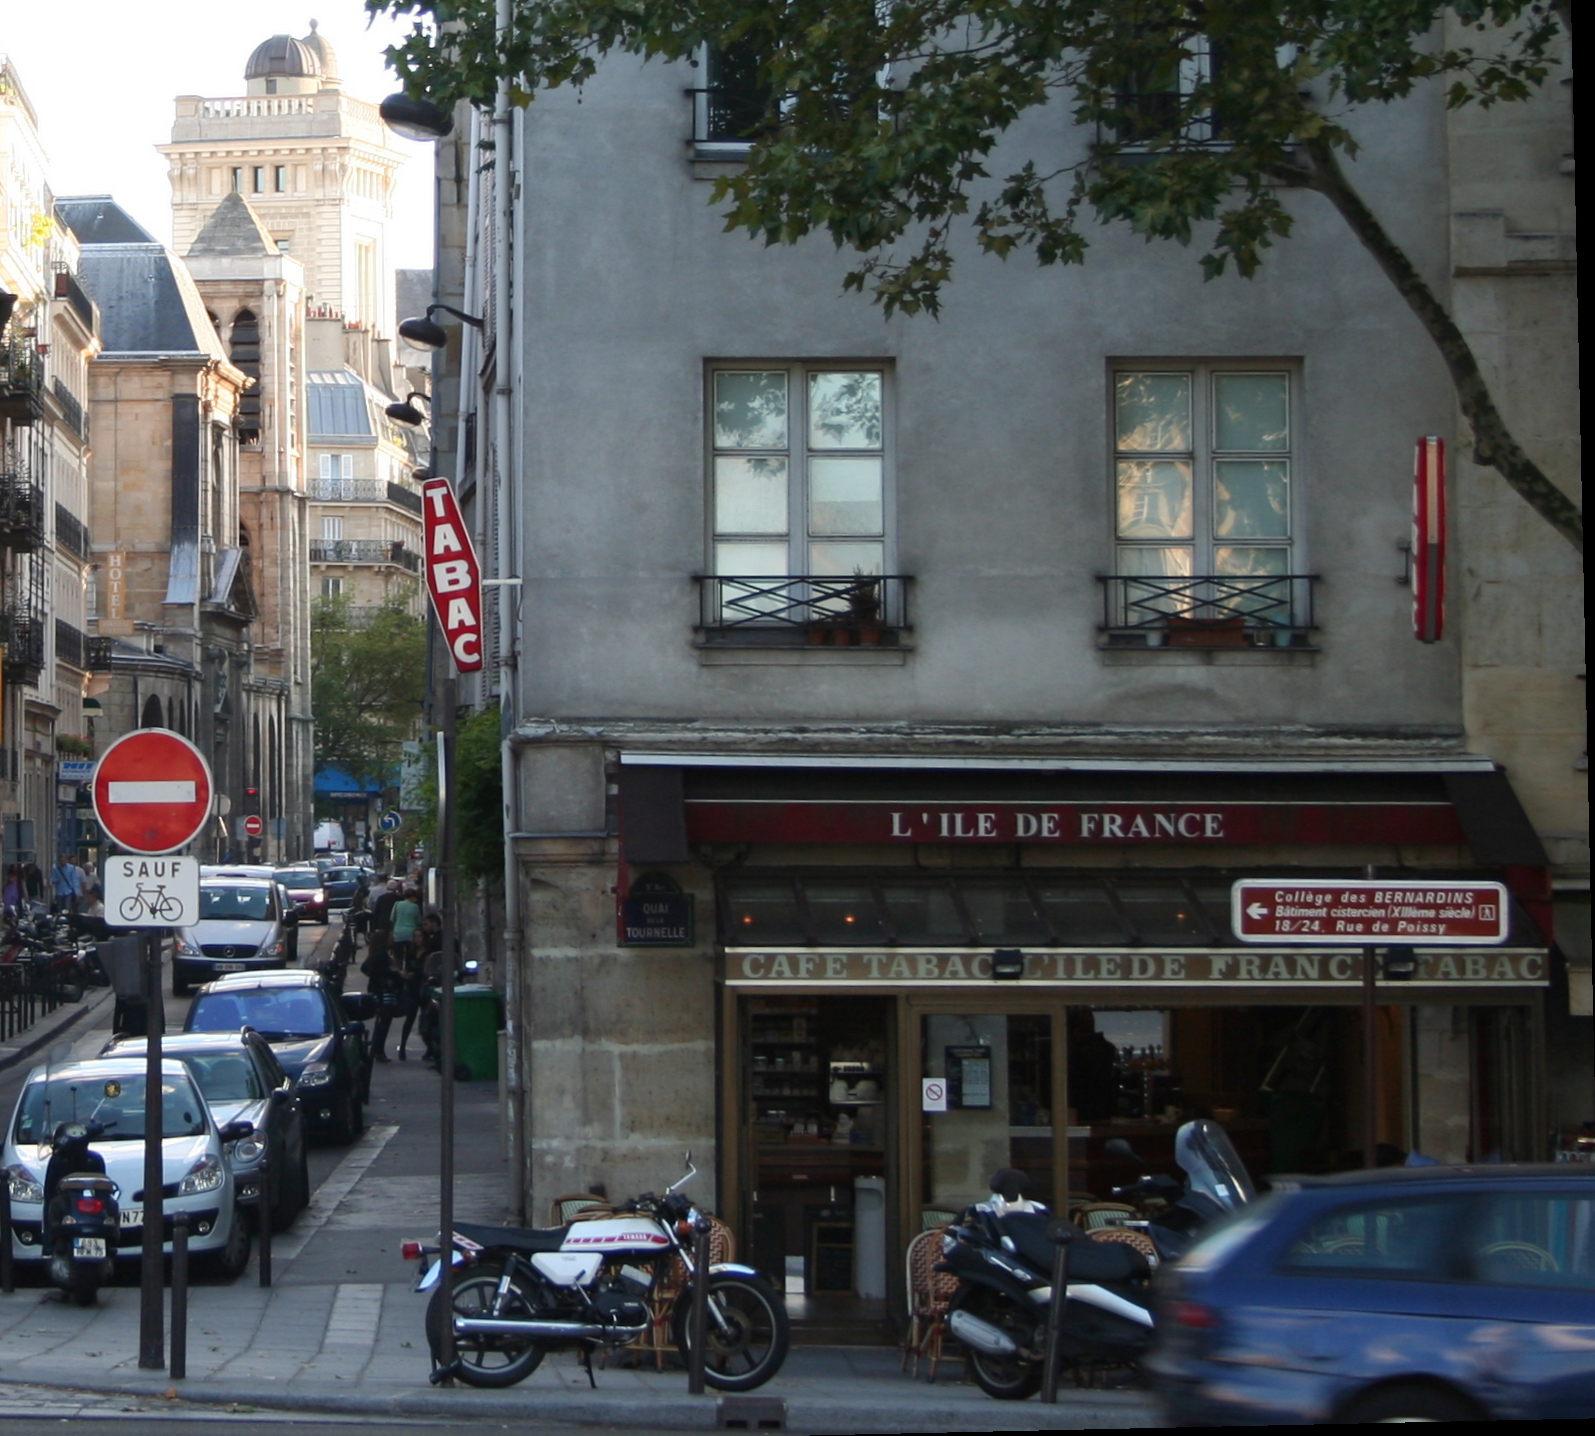 A Paris street corner